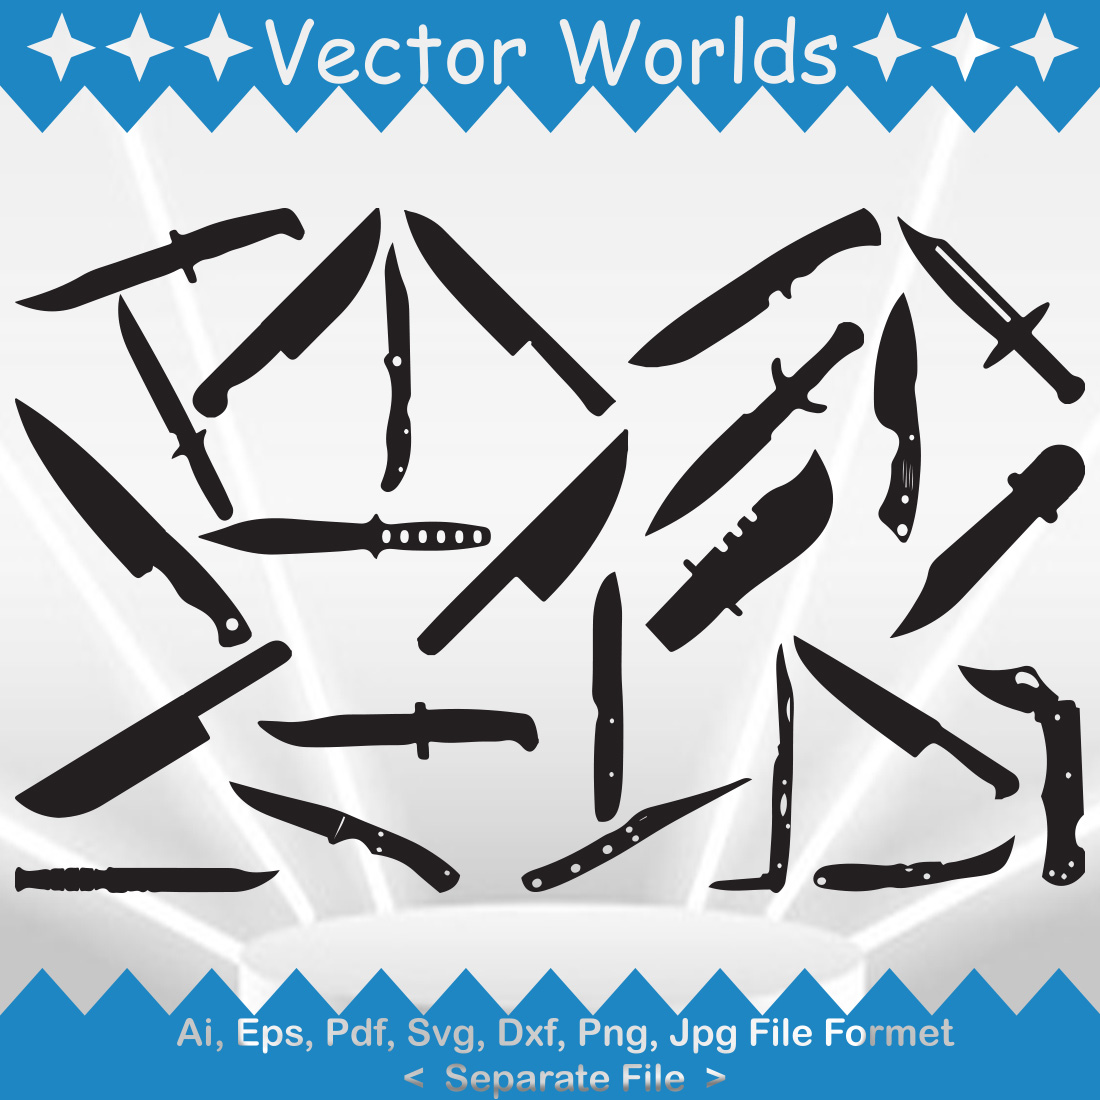 Knife SVG Vector Design cover image.